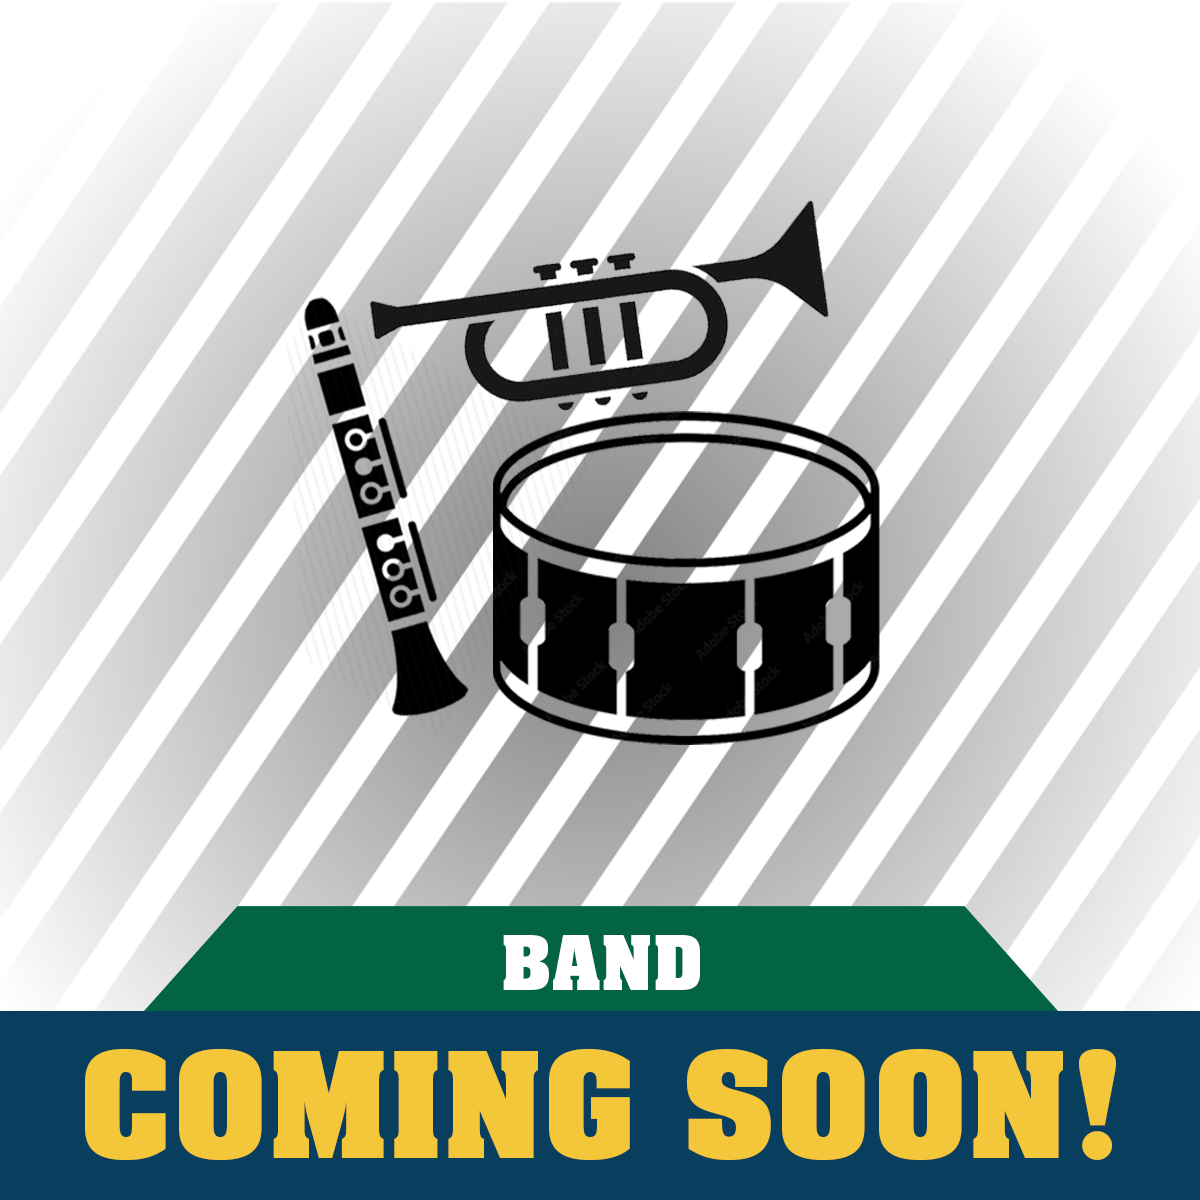 Clover Garden Band Apparel Coming Soon!